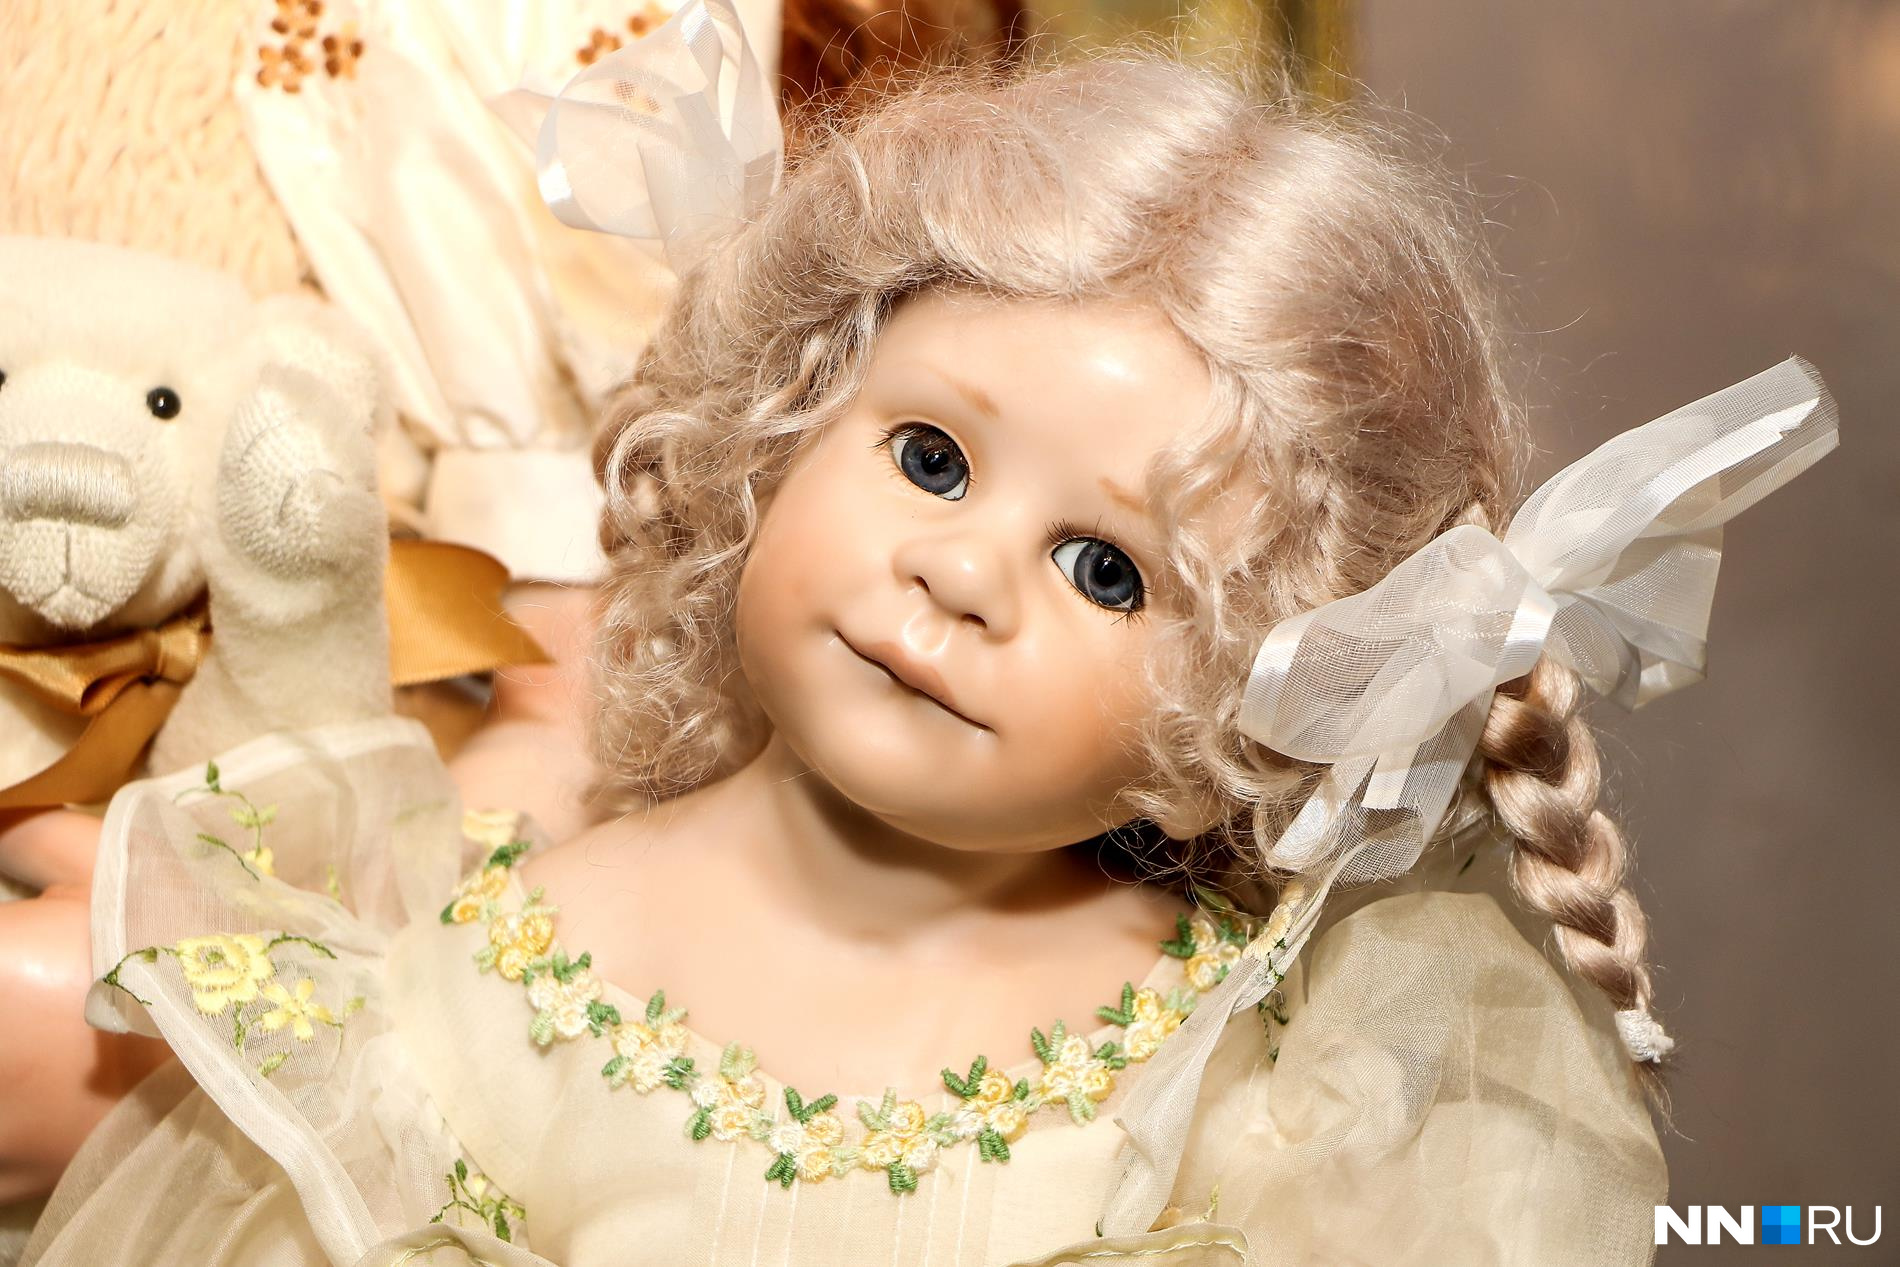 Отчего сегодня куклы. Нижний Новгород музей кукол Ольги Лобачевой. Галерея кукол Нижний Новгород.